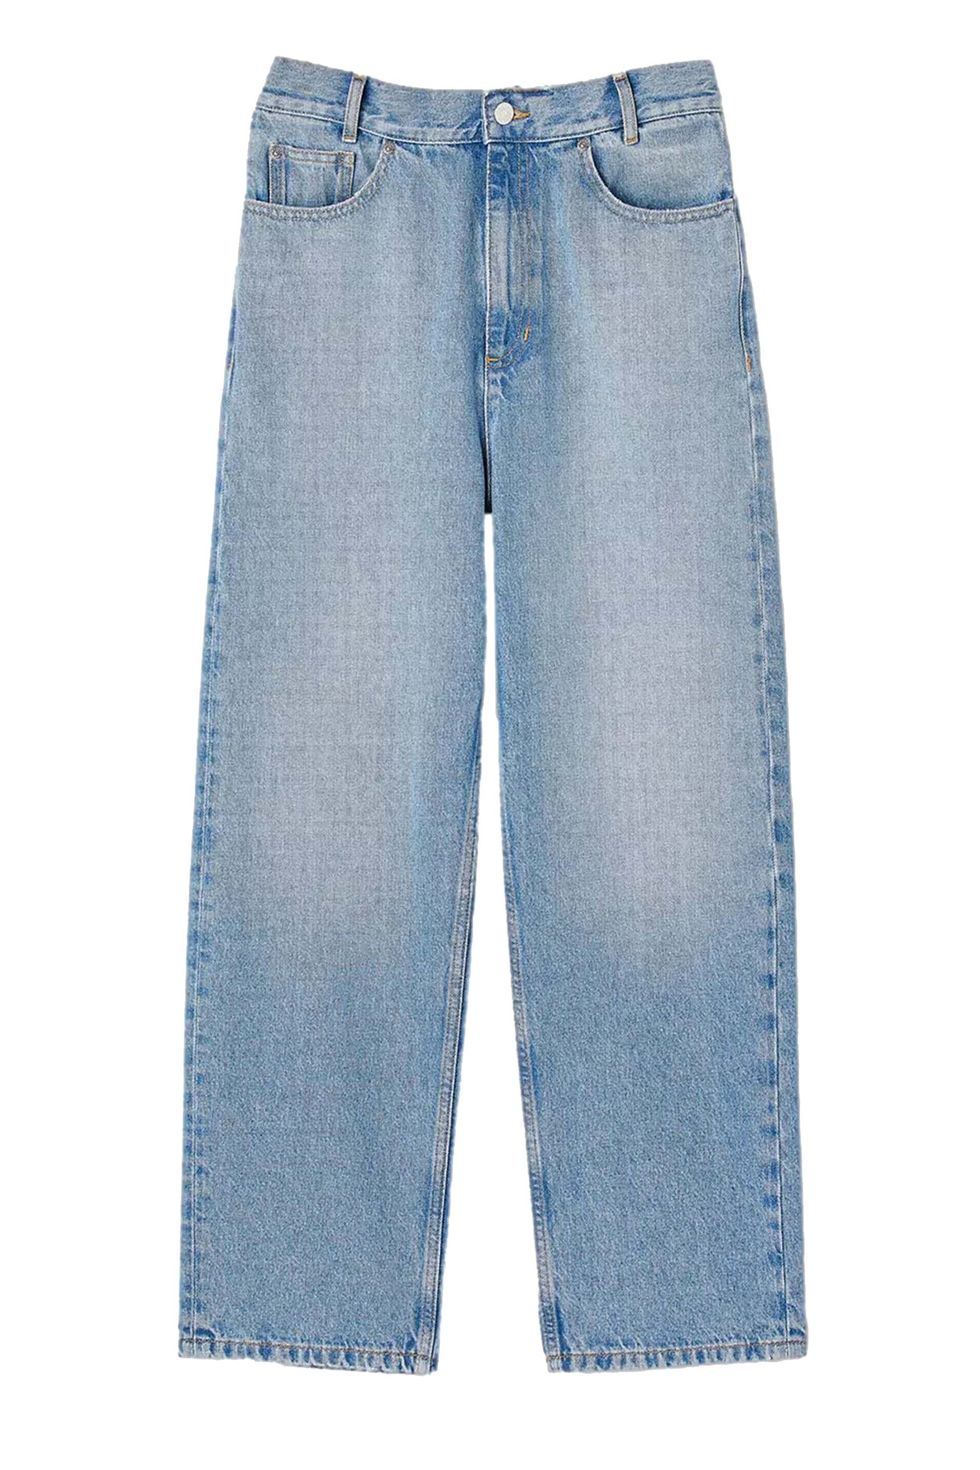 10 celana jeans low-rise yang mudah dikombinasikan